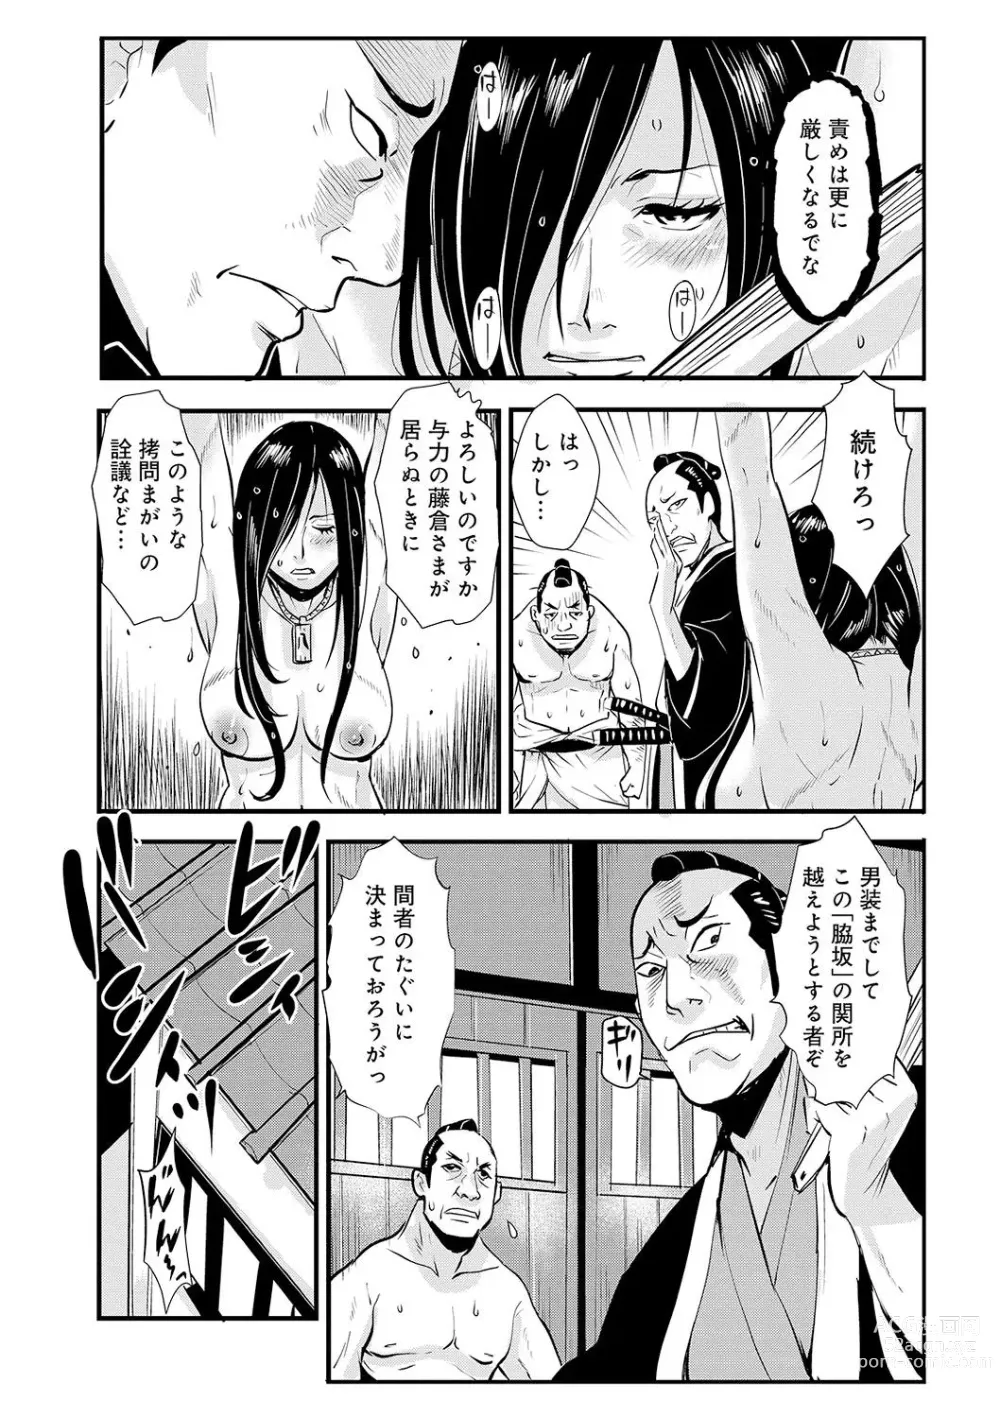 Page 3 of manga Harami samurai 09 ~Sekisho de Toraerare Goumon no Semeku~